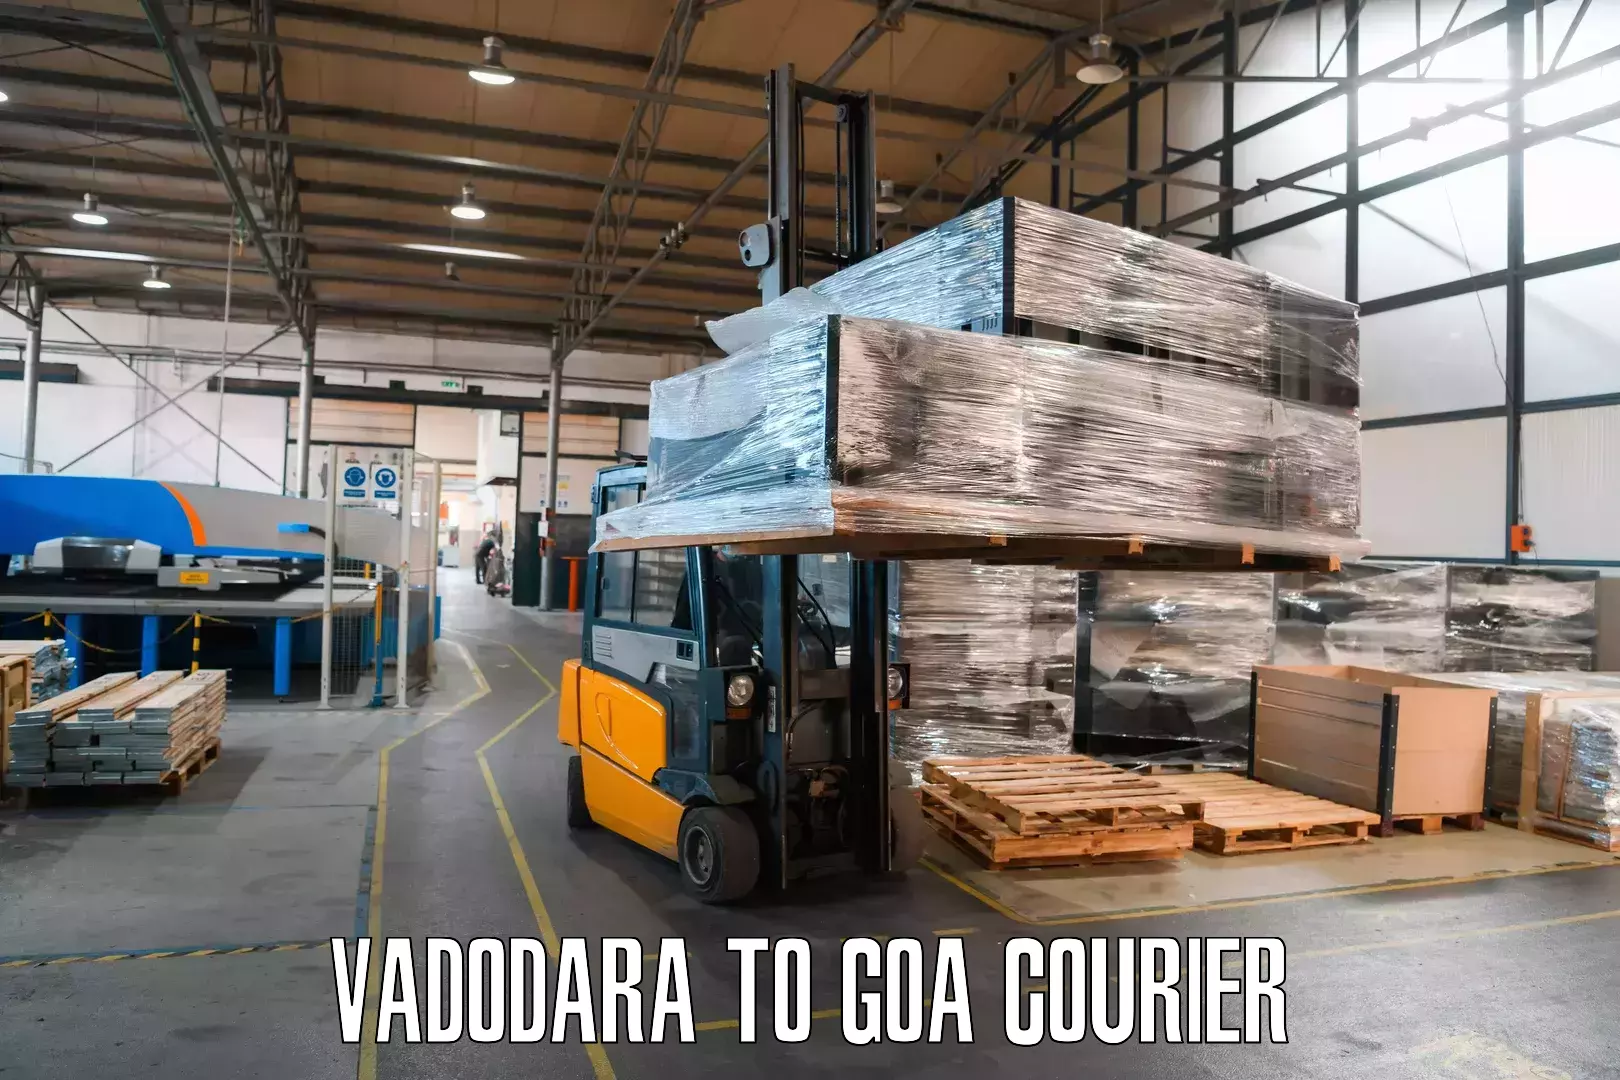 Express delivery capabilities in Vadodara to Canacona